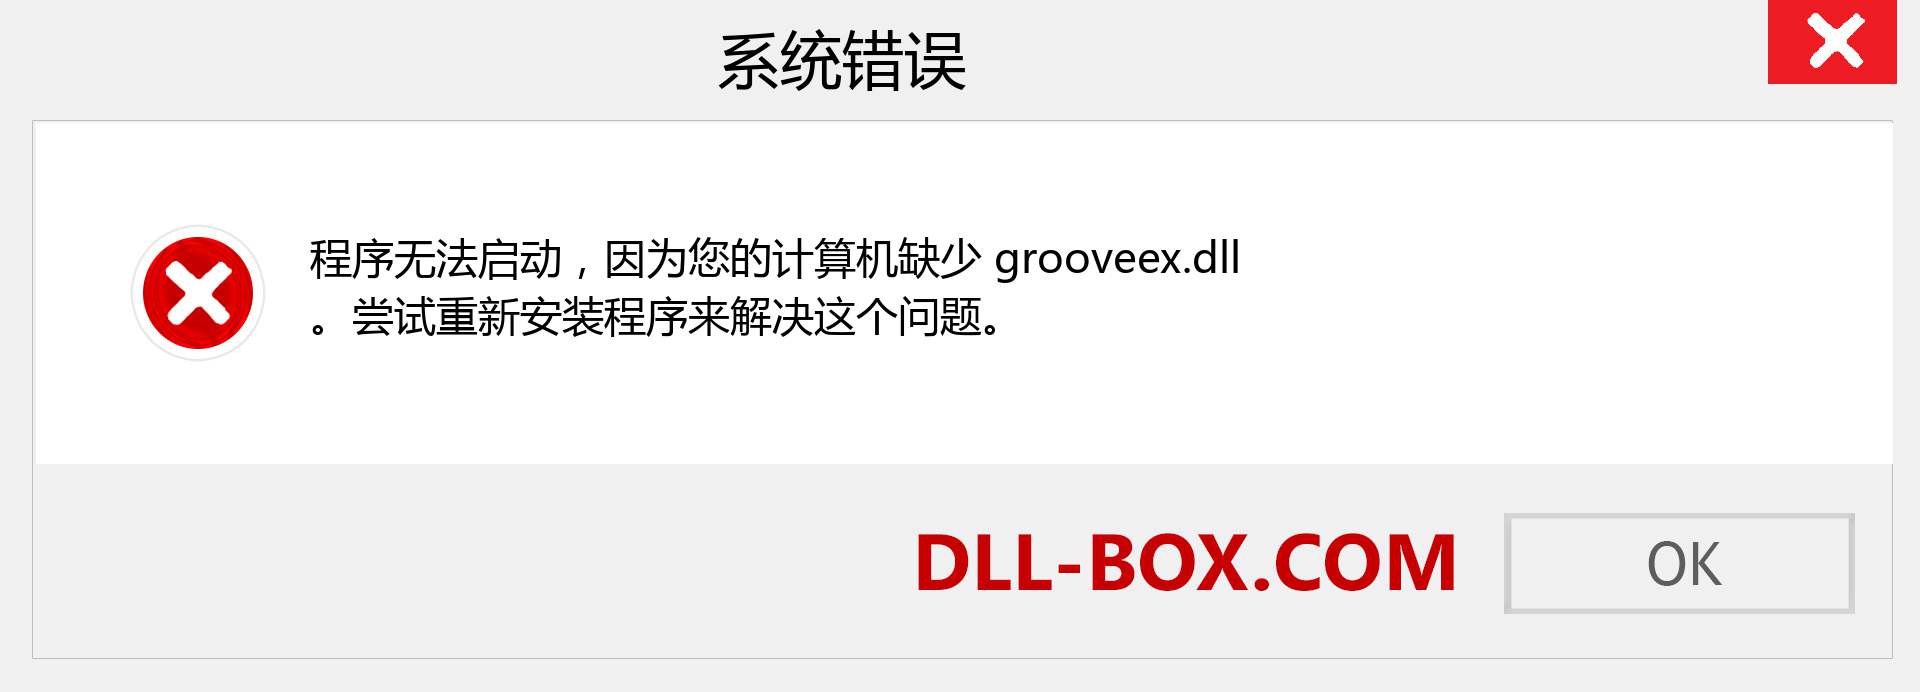 grooveex.dll 文件丢失？。 适用于 Windows 7、8、10 的下载 - 修复 Windows、照片、图像上的 grooveex dll 丢失错误